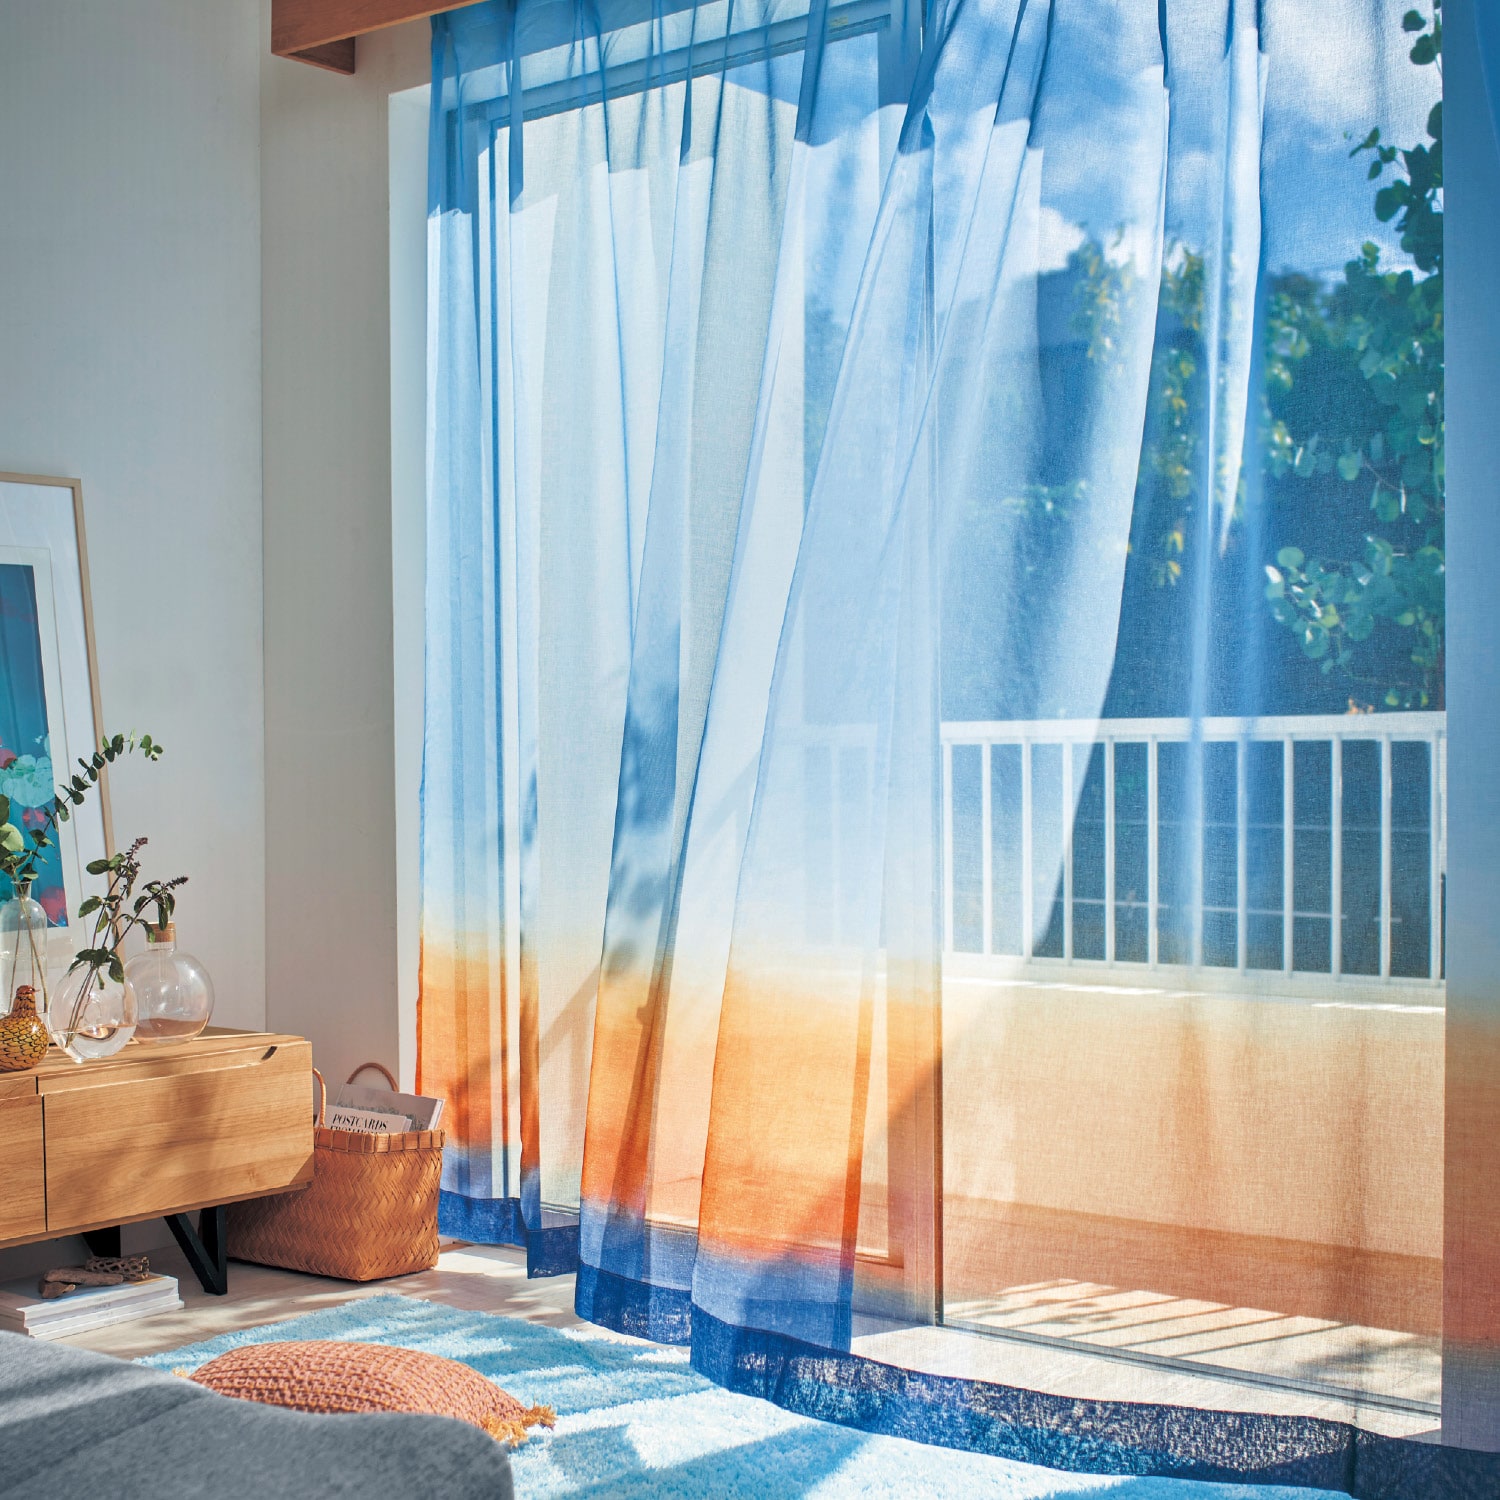 ベルメゾン カーテン２枚組「朝焼けの空を映したボイルカーテン」